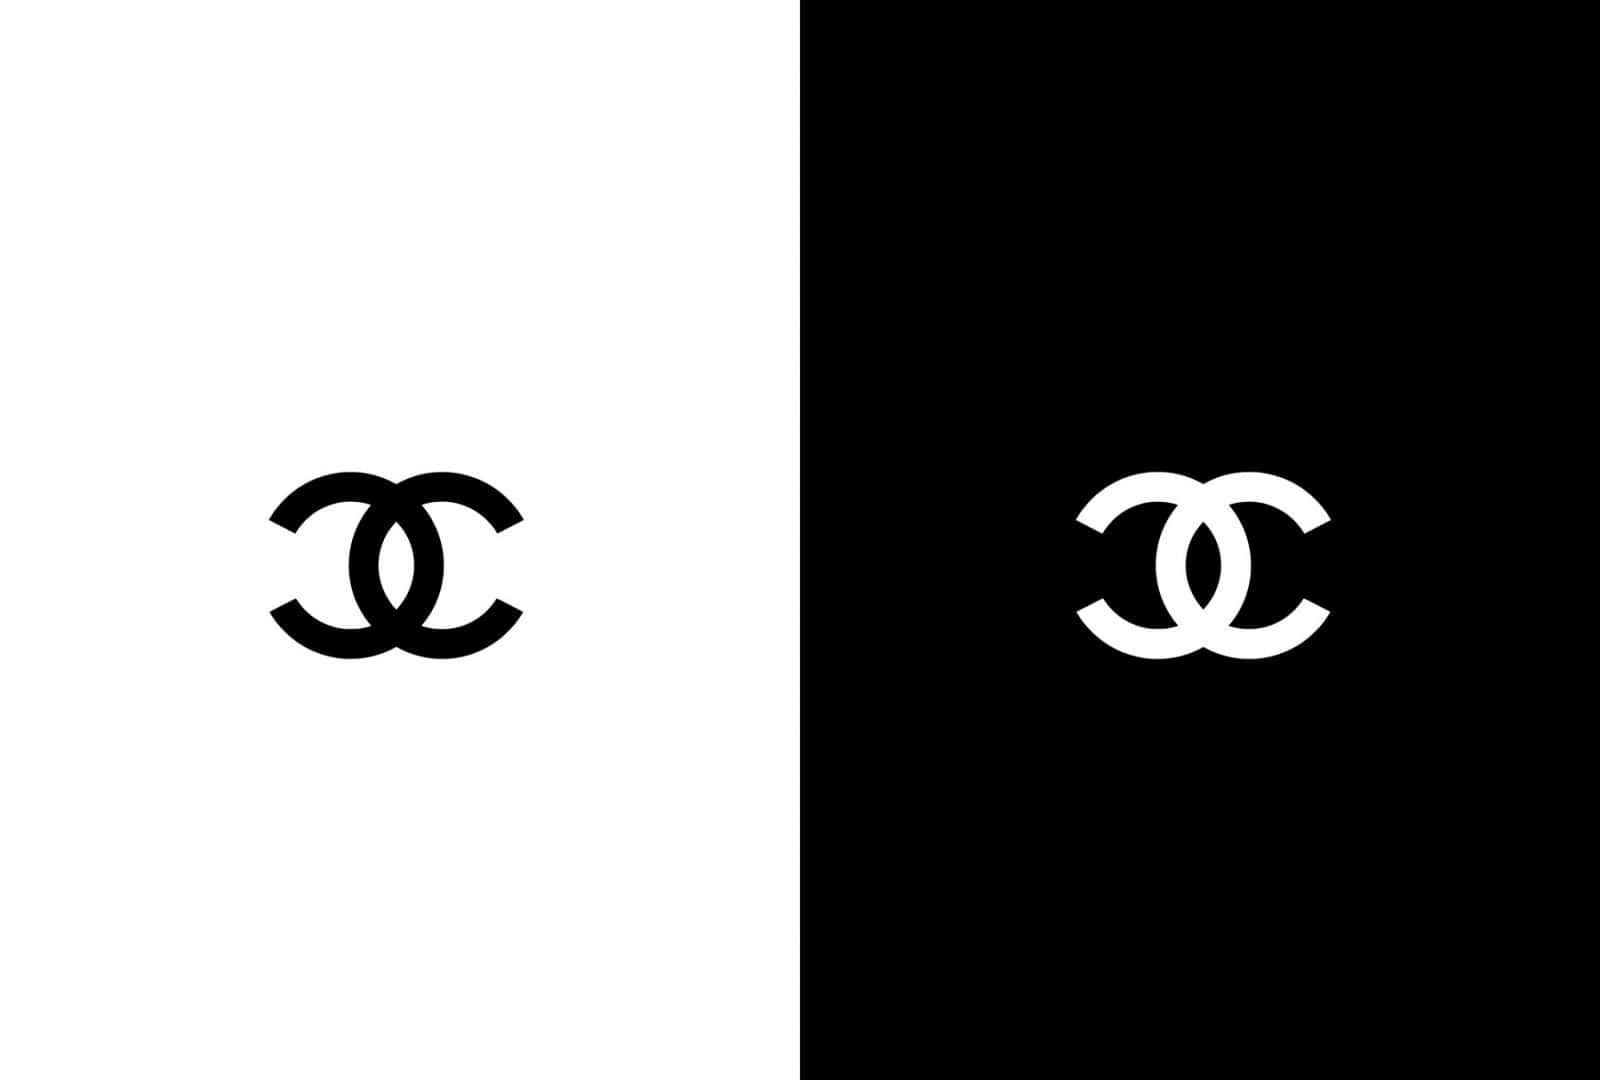 Logoetfra Luksusmærket Chanel.